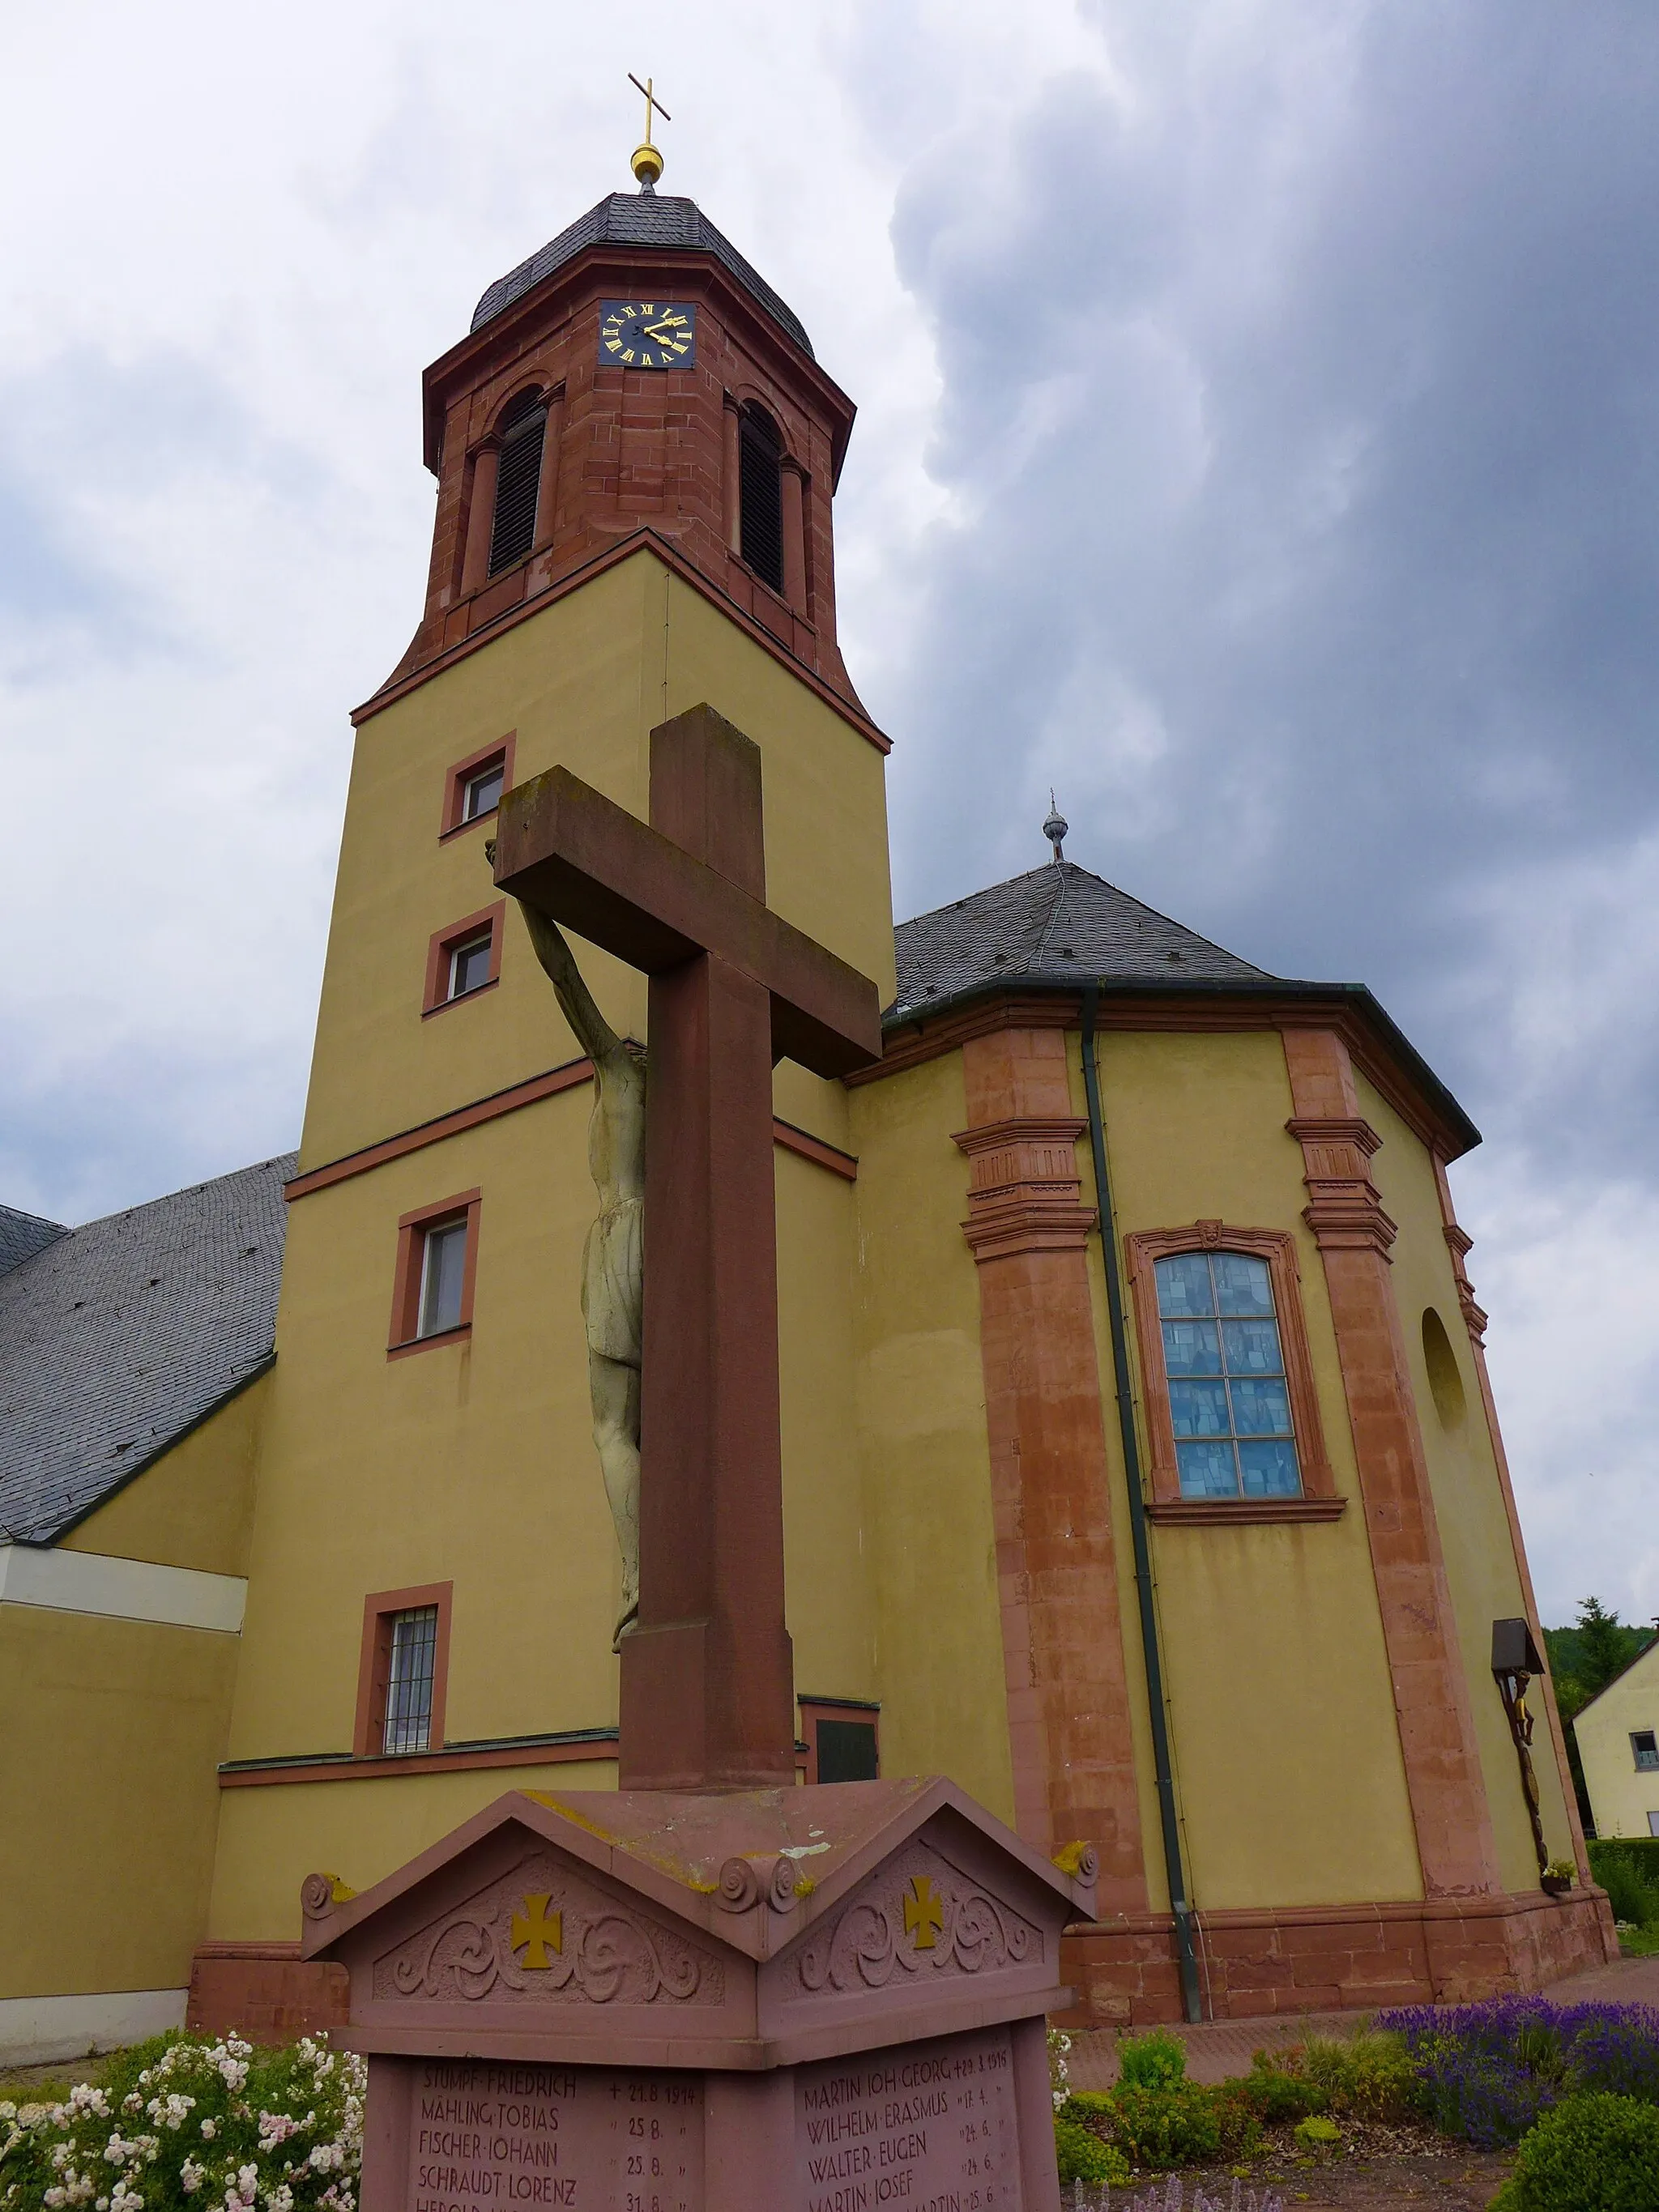 Image of Helmstadt